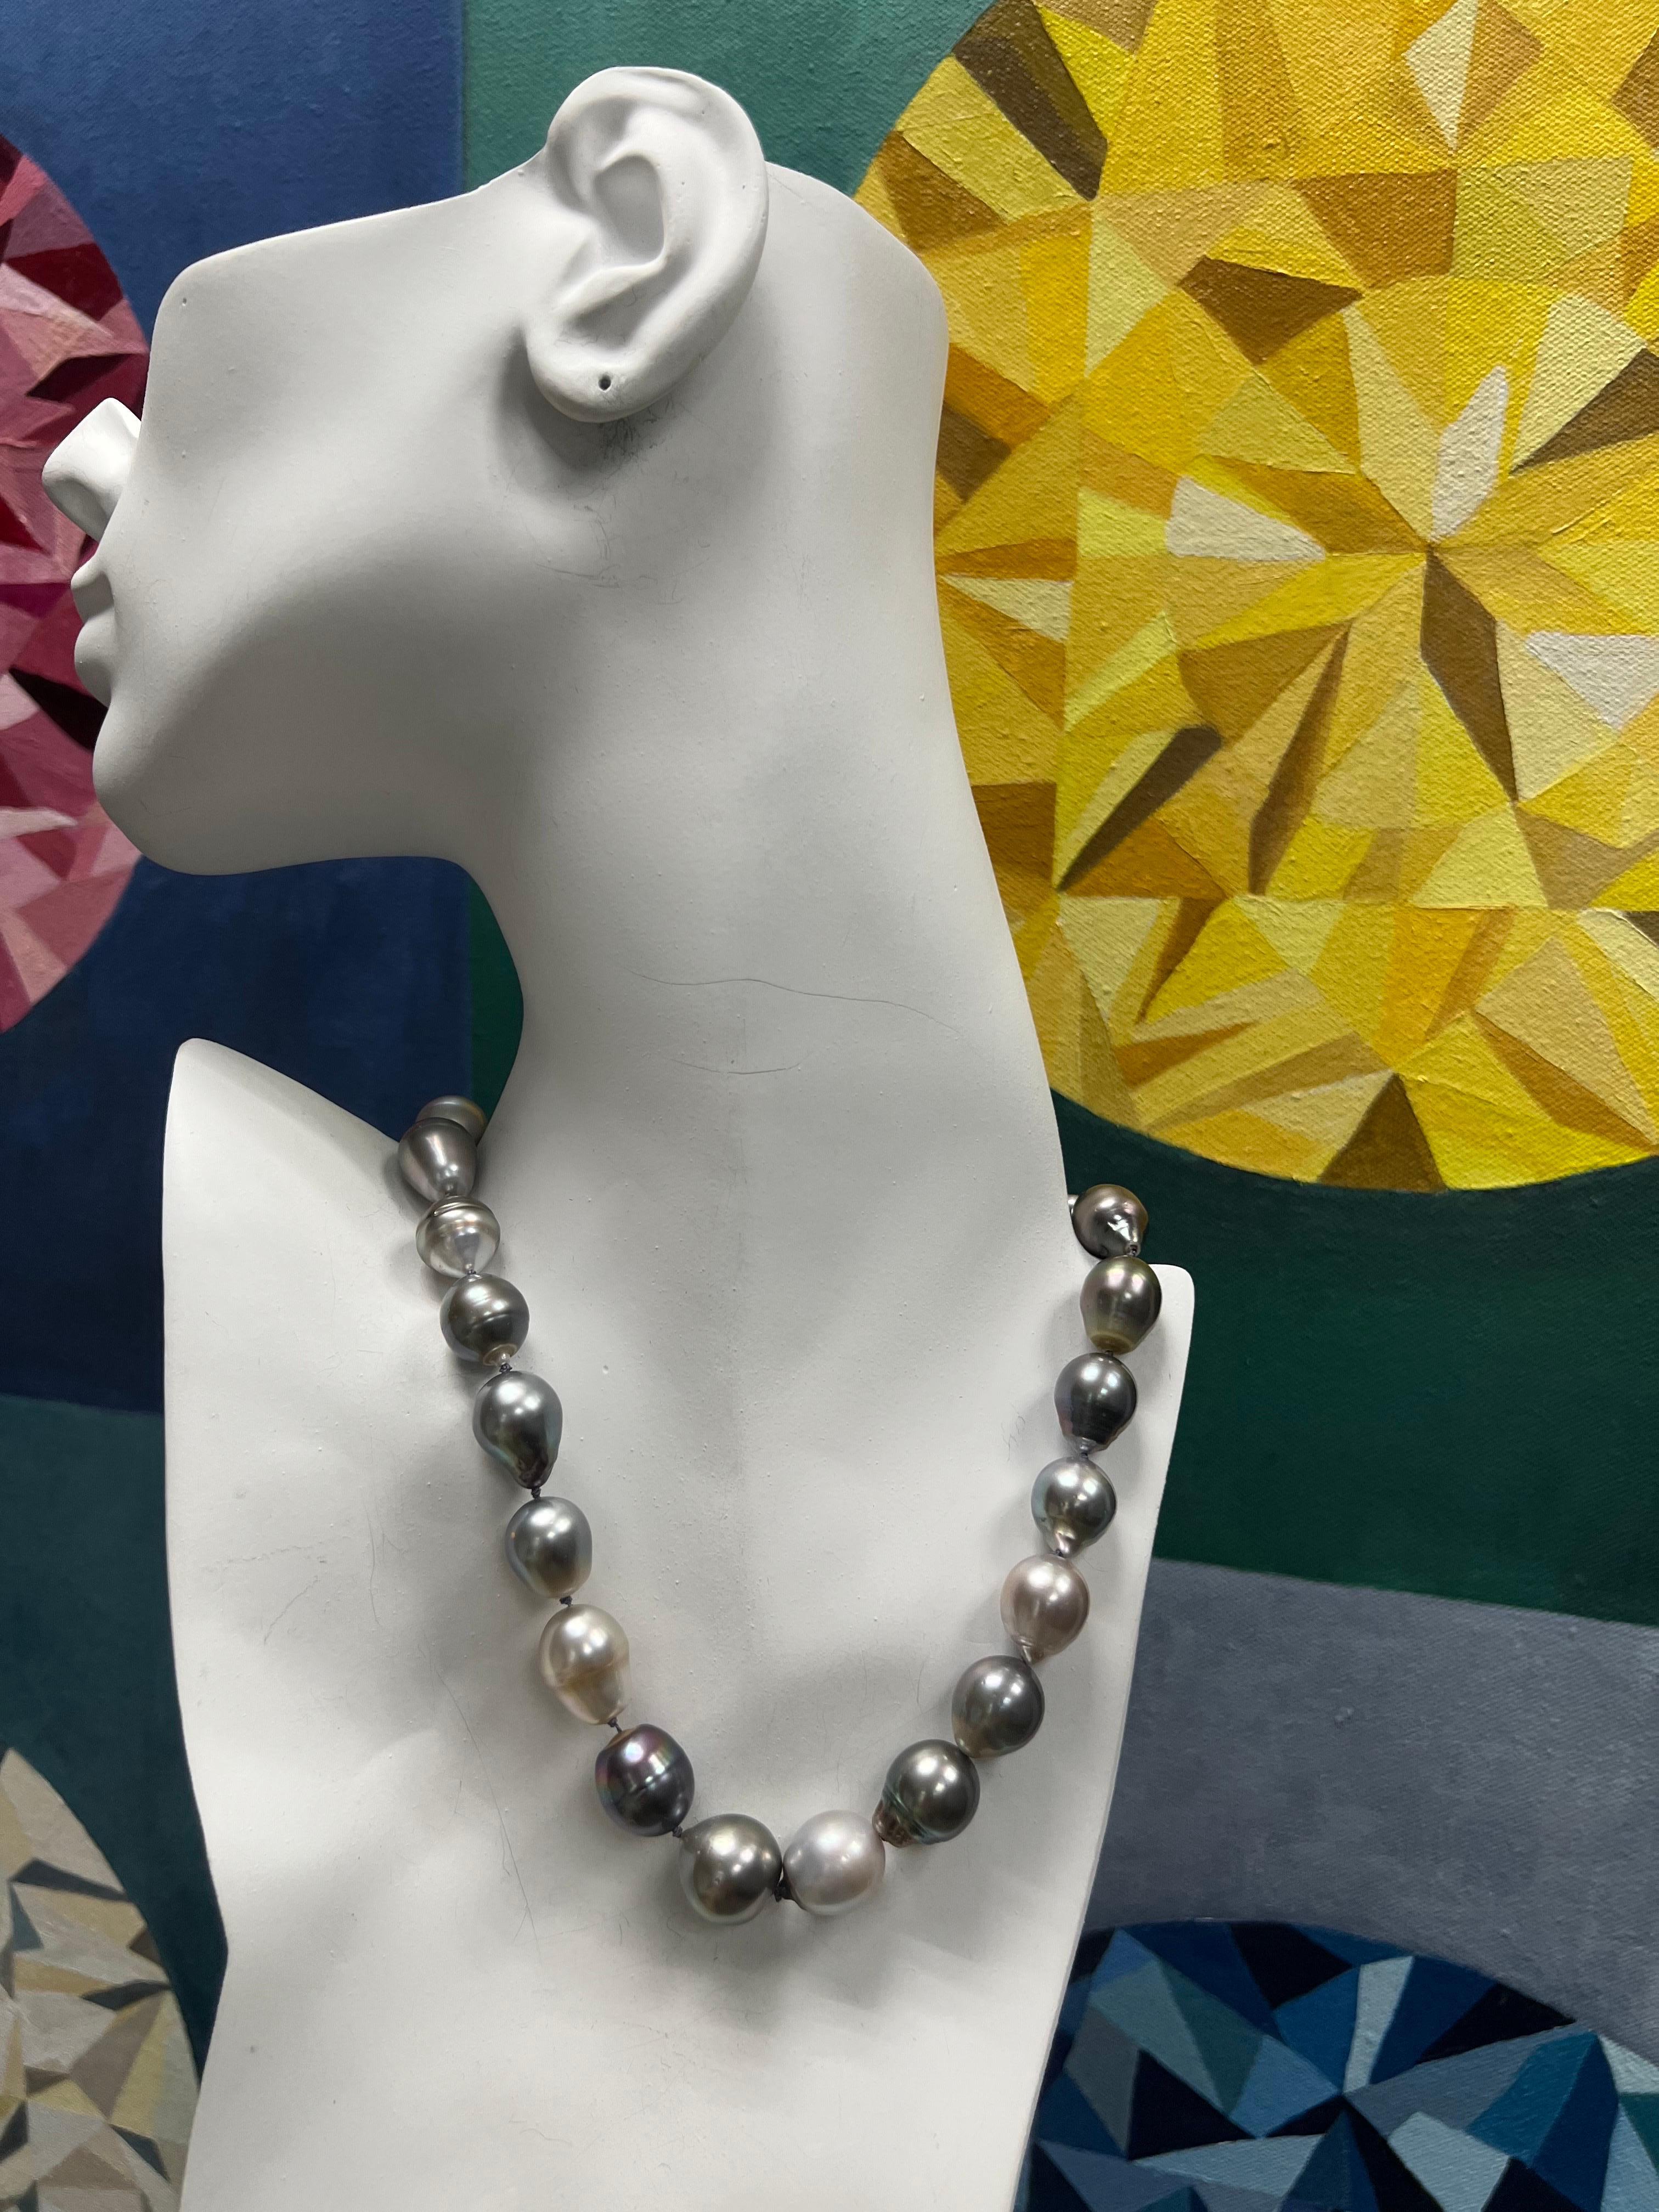 Moderne Gold Tahiti-Barock-Halskette mit Knebelverschluss, Tahiti-Barock 11-14,5 mm Perle 15,75 Zoll

Er ist mit 23 prächtigen, größeren 11-14,5 mm großen Perlen mit kräftigen, bunten Farben besetzt. Sehr gute Oberfläche, strahlend hoher Glanz und